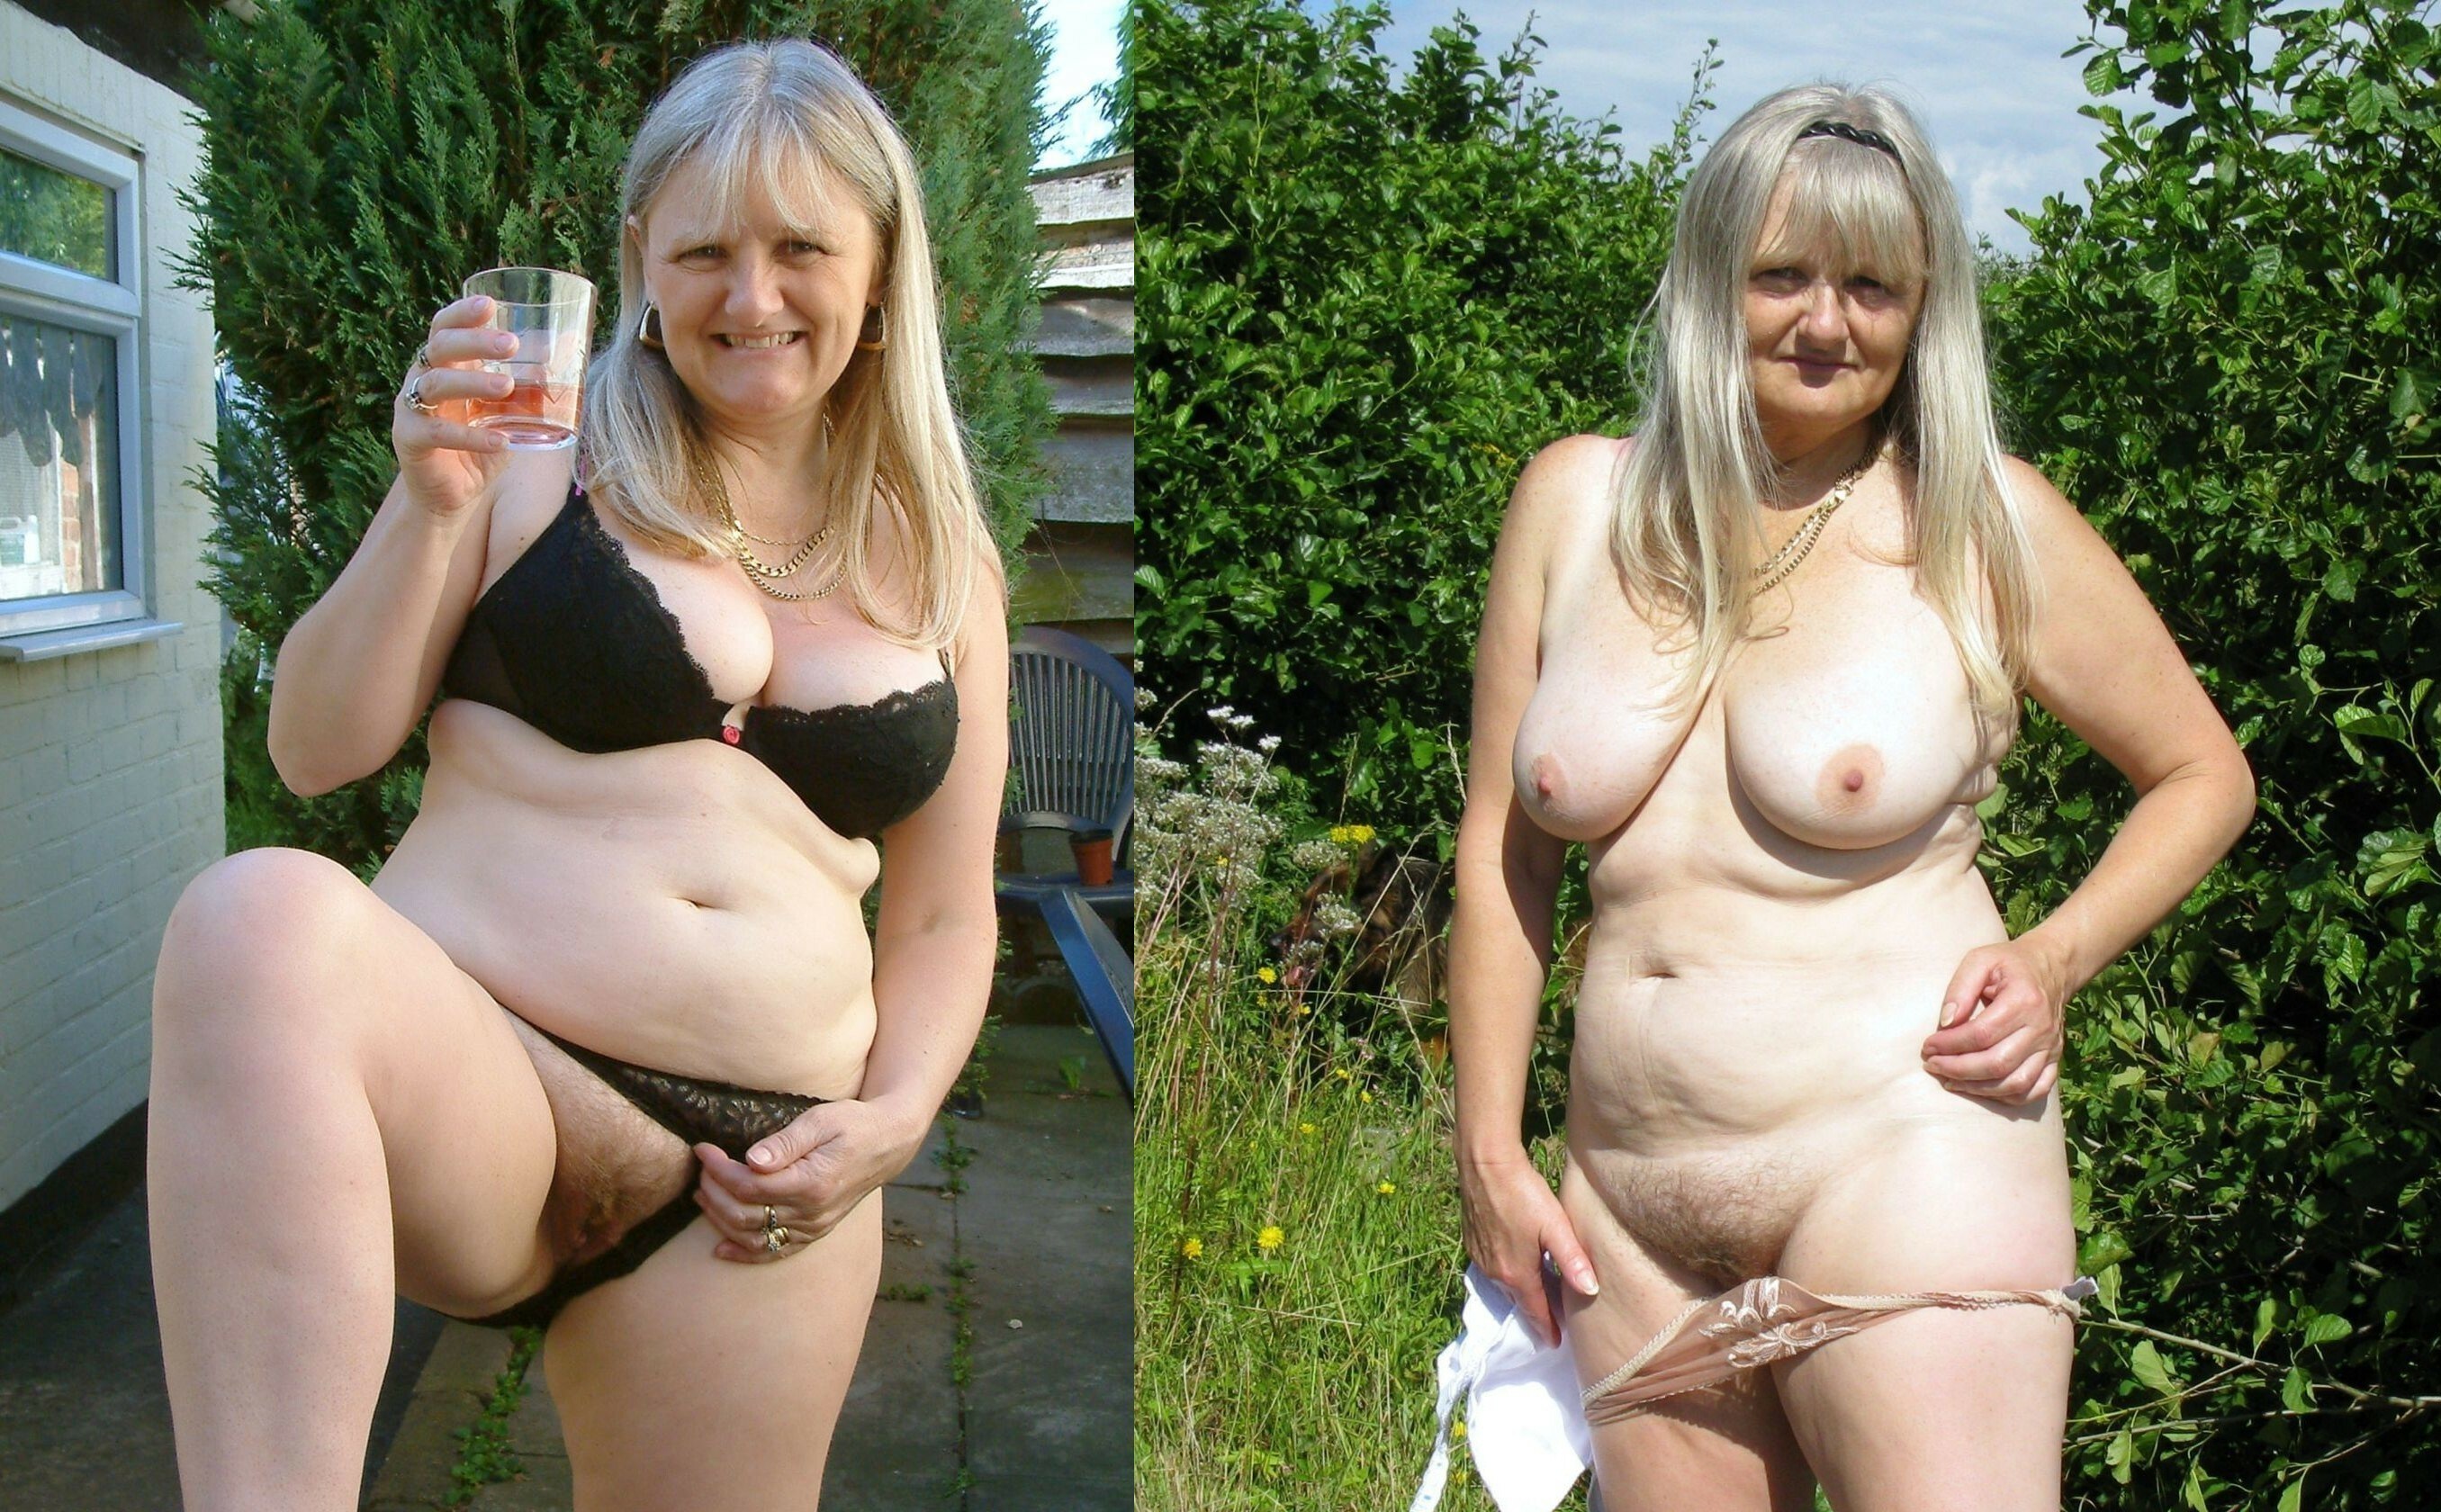 https://motherlesspics.com/uploads/posts/2023-03/1678710927_motherlesspics-com-p-porn-naked-women-undress-fat-take-off-thei-22.jpg